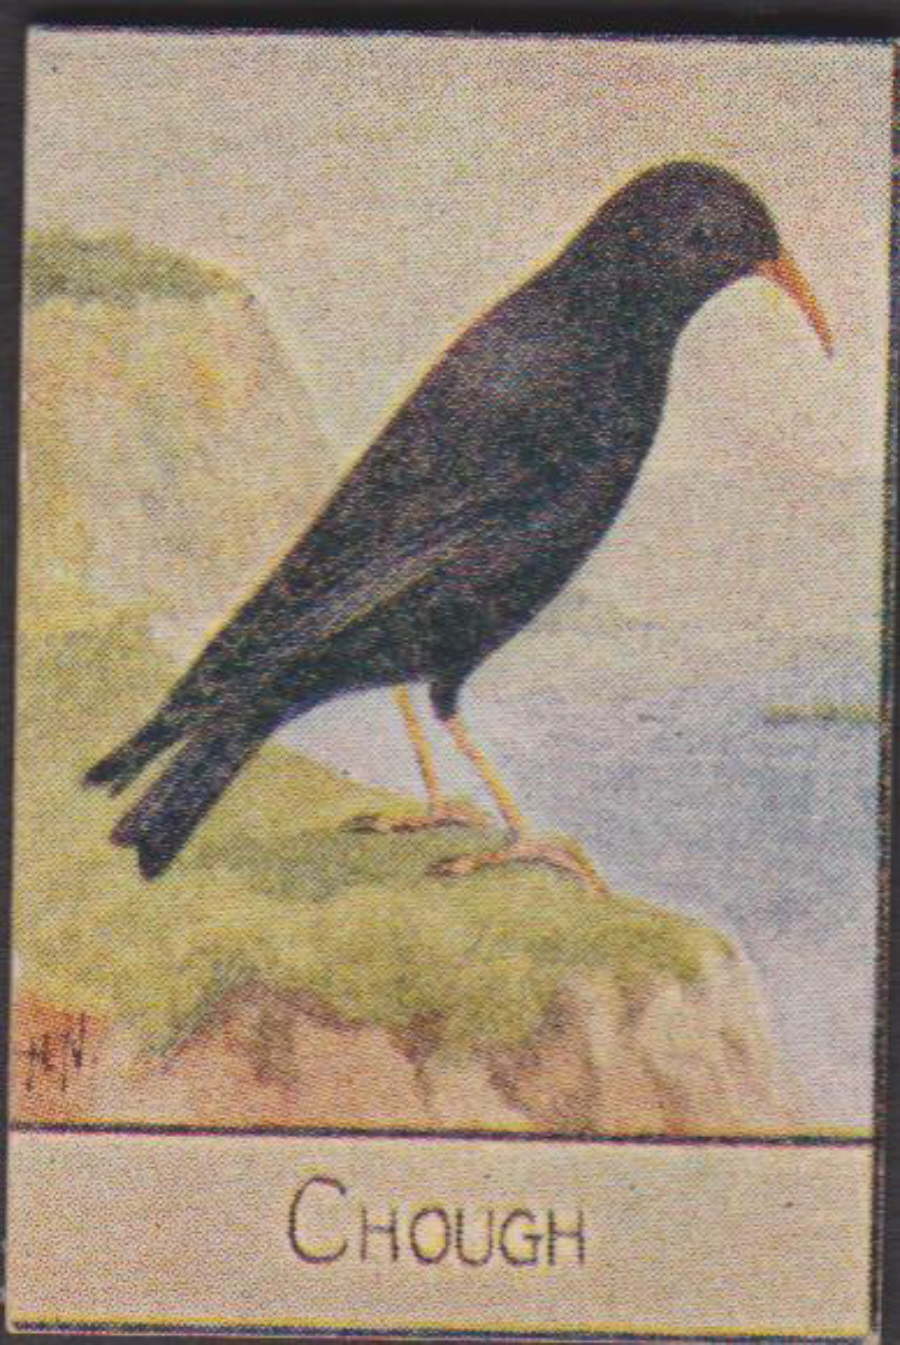 Spratt's British Bird Series Numbered No 54 Chough